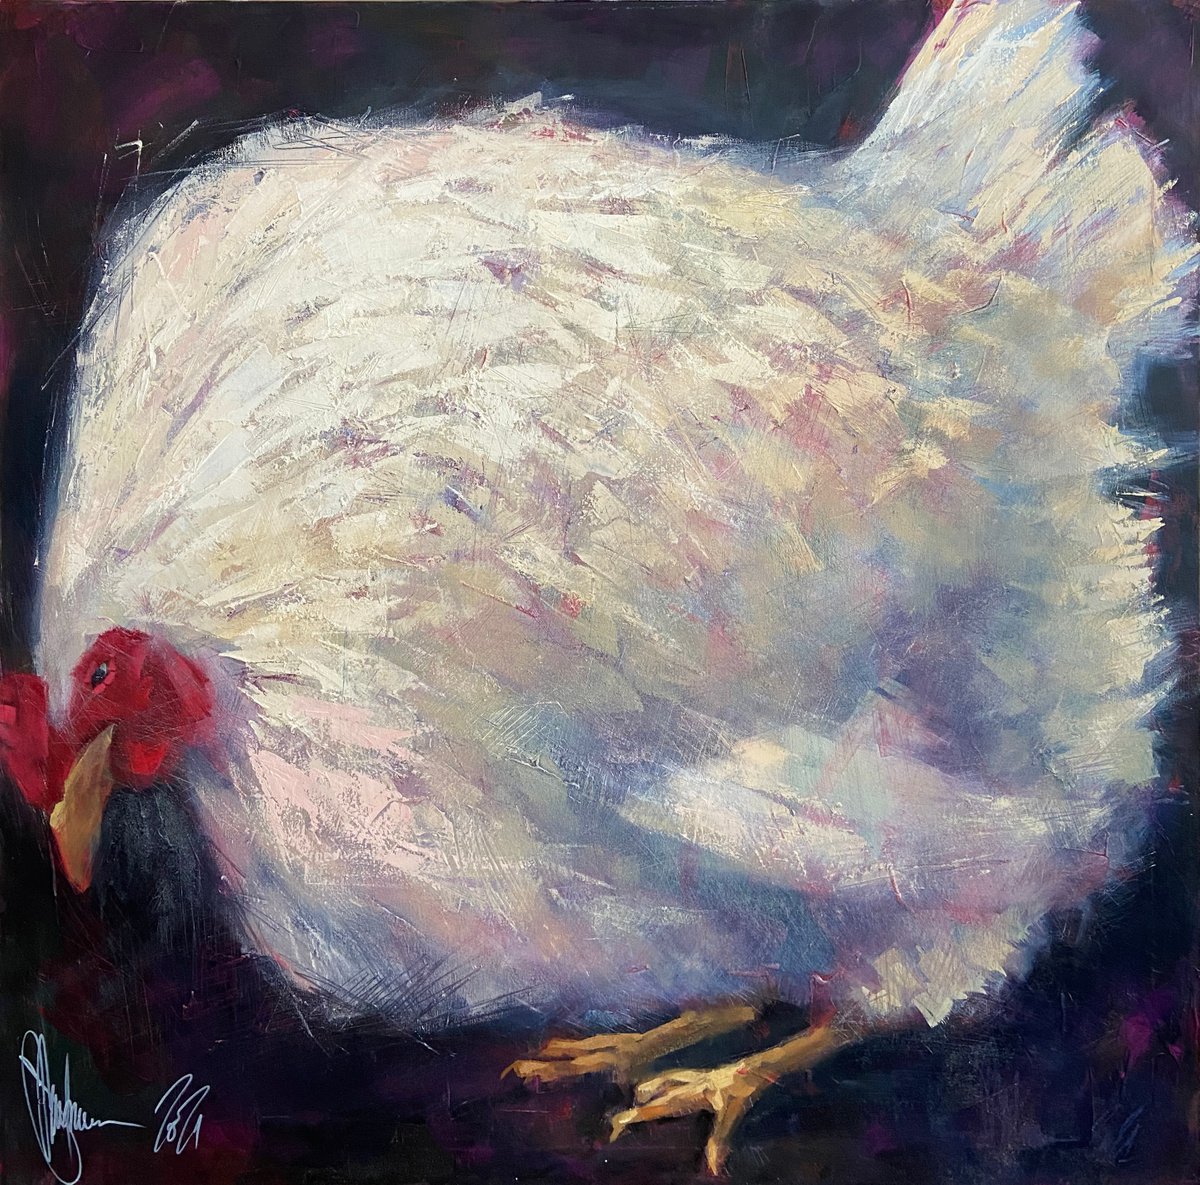 White Hen. by Igor Shulman